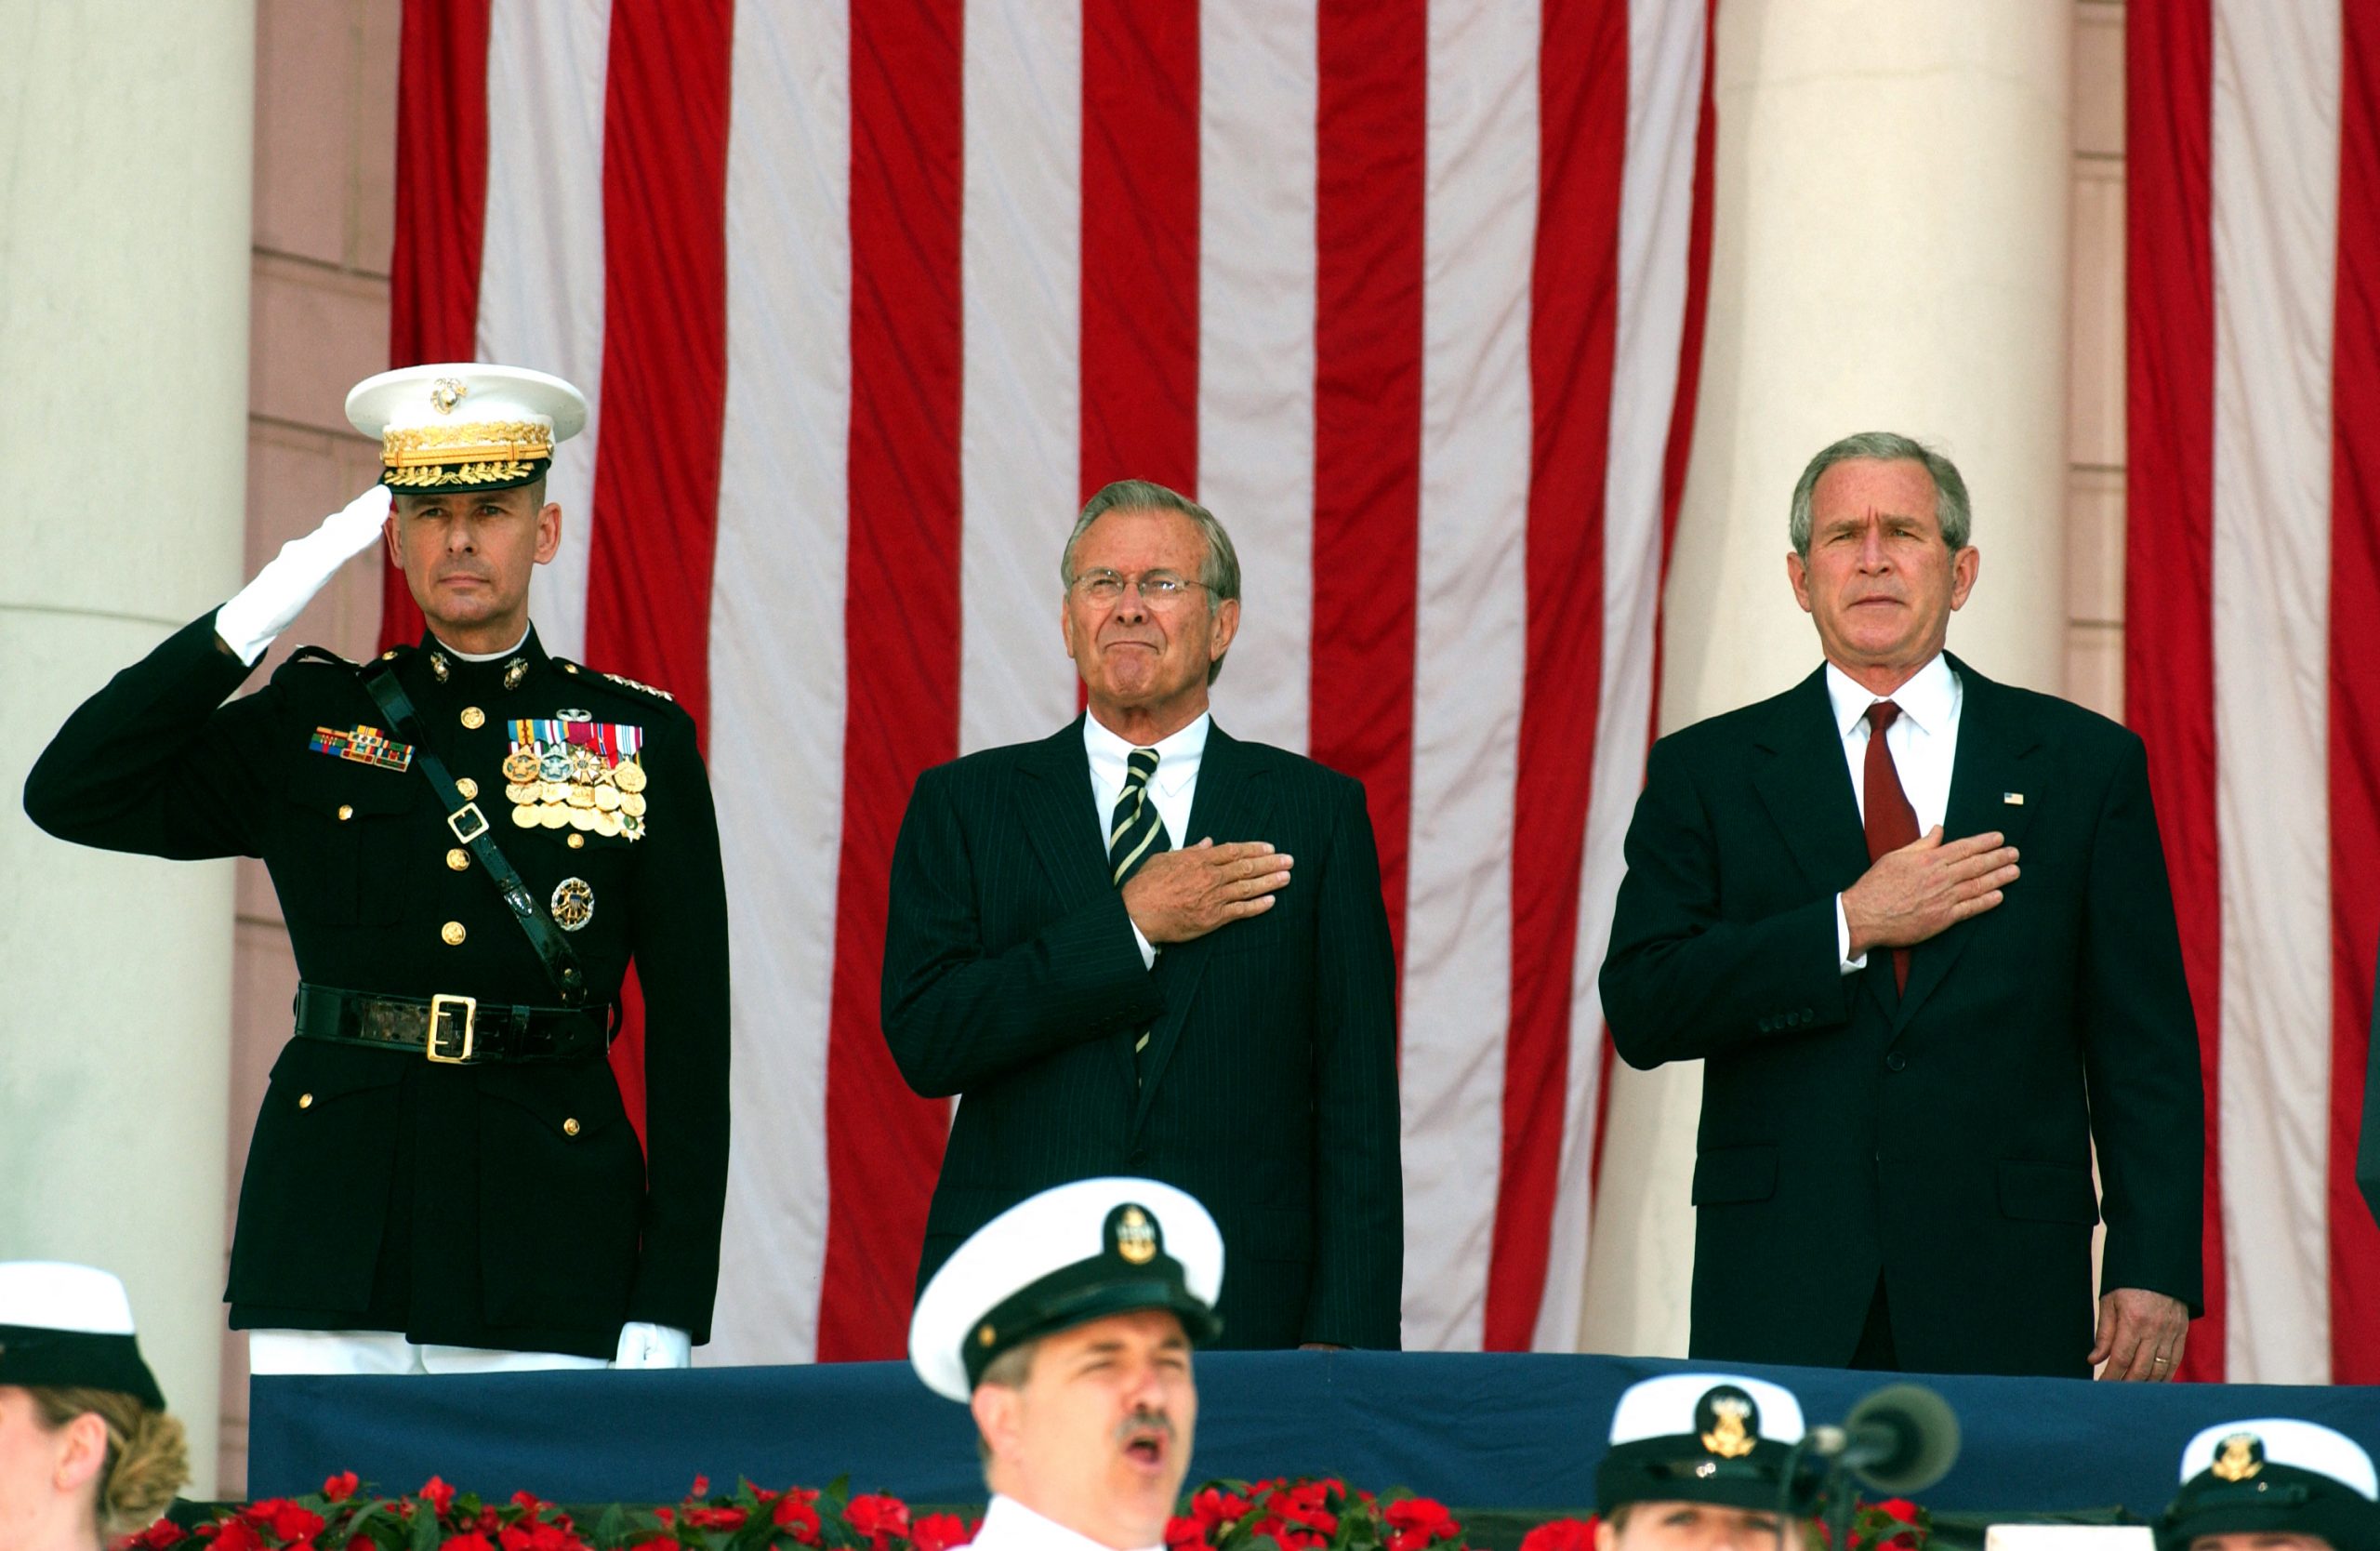 الرئيس الأمريكي الأسبق جورج دبليو بوش مع وزير الدفاع الأسبق دونالد رمسفيلد بالمقبرة الوطنية بأرلينجتون، فيرجينيا، الولايات المتحدة الأمريكية، 29 مايو 2006. رويترز، رون ساش، بول.